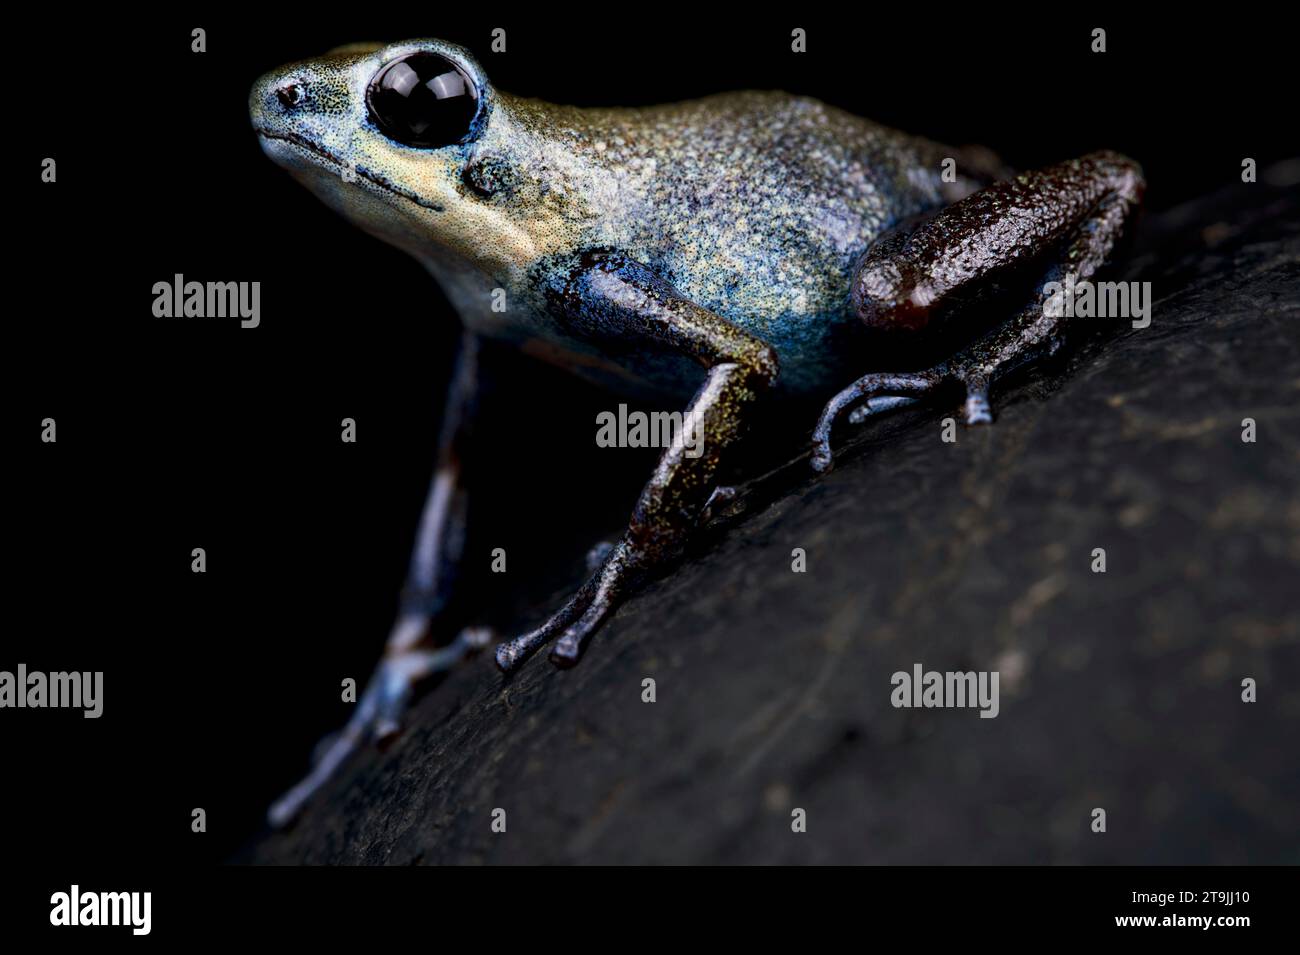 La rana di freccette di fragola (Oophaga pumilio) è una specie di rana di colore molto variabile proveniente dall'America centrale. Foto Stock